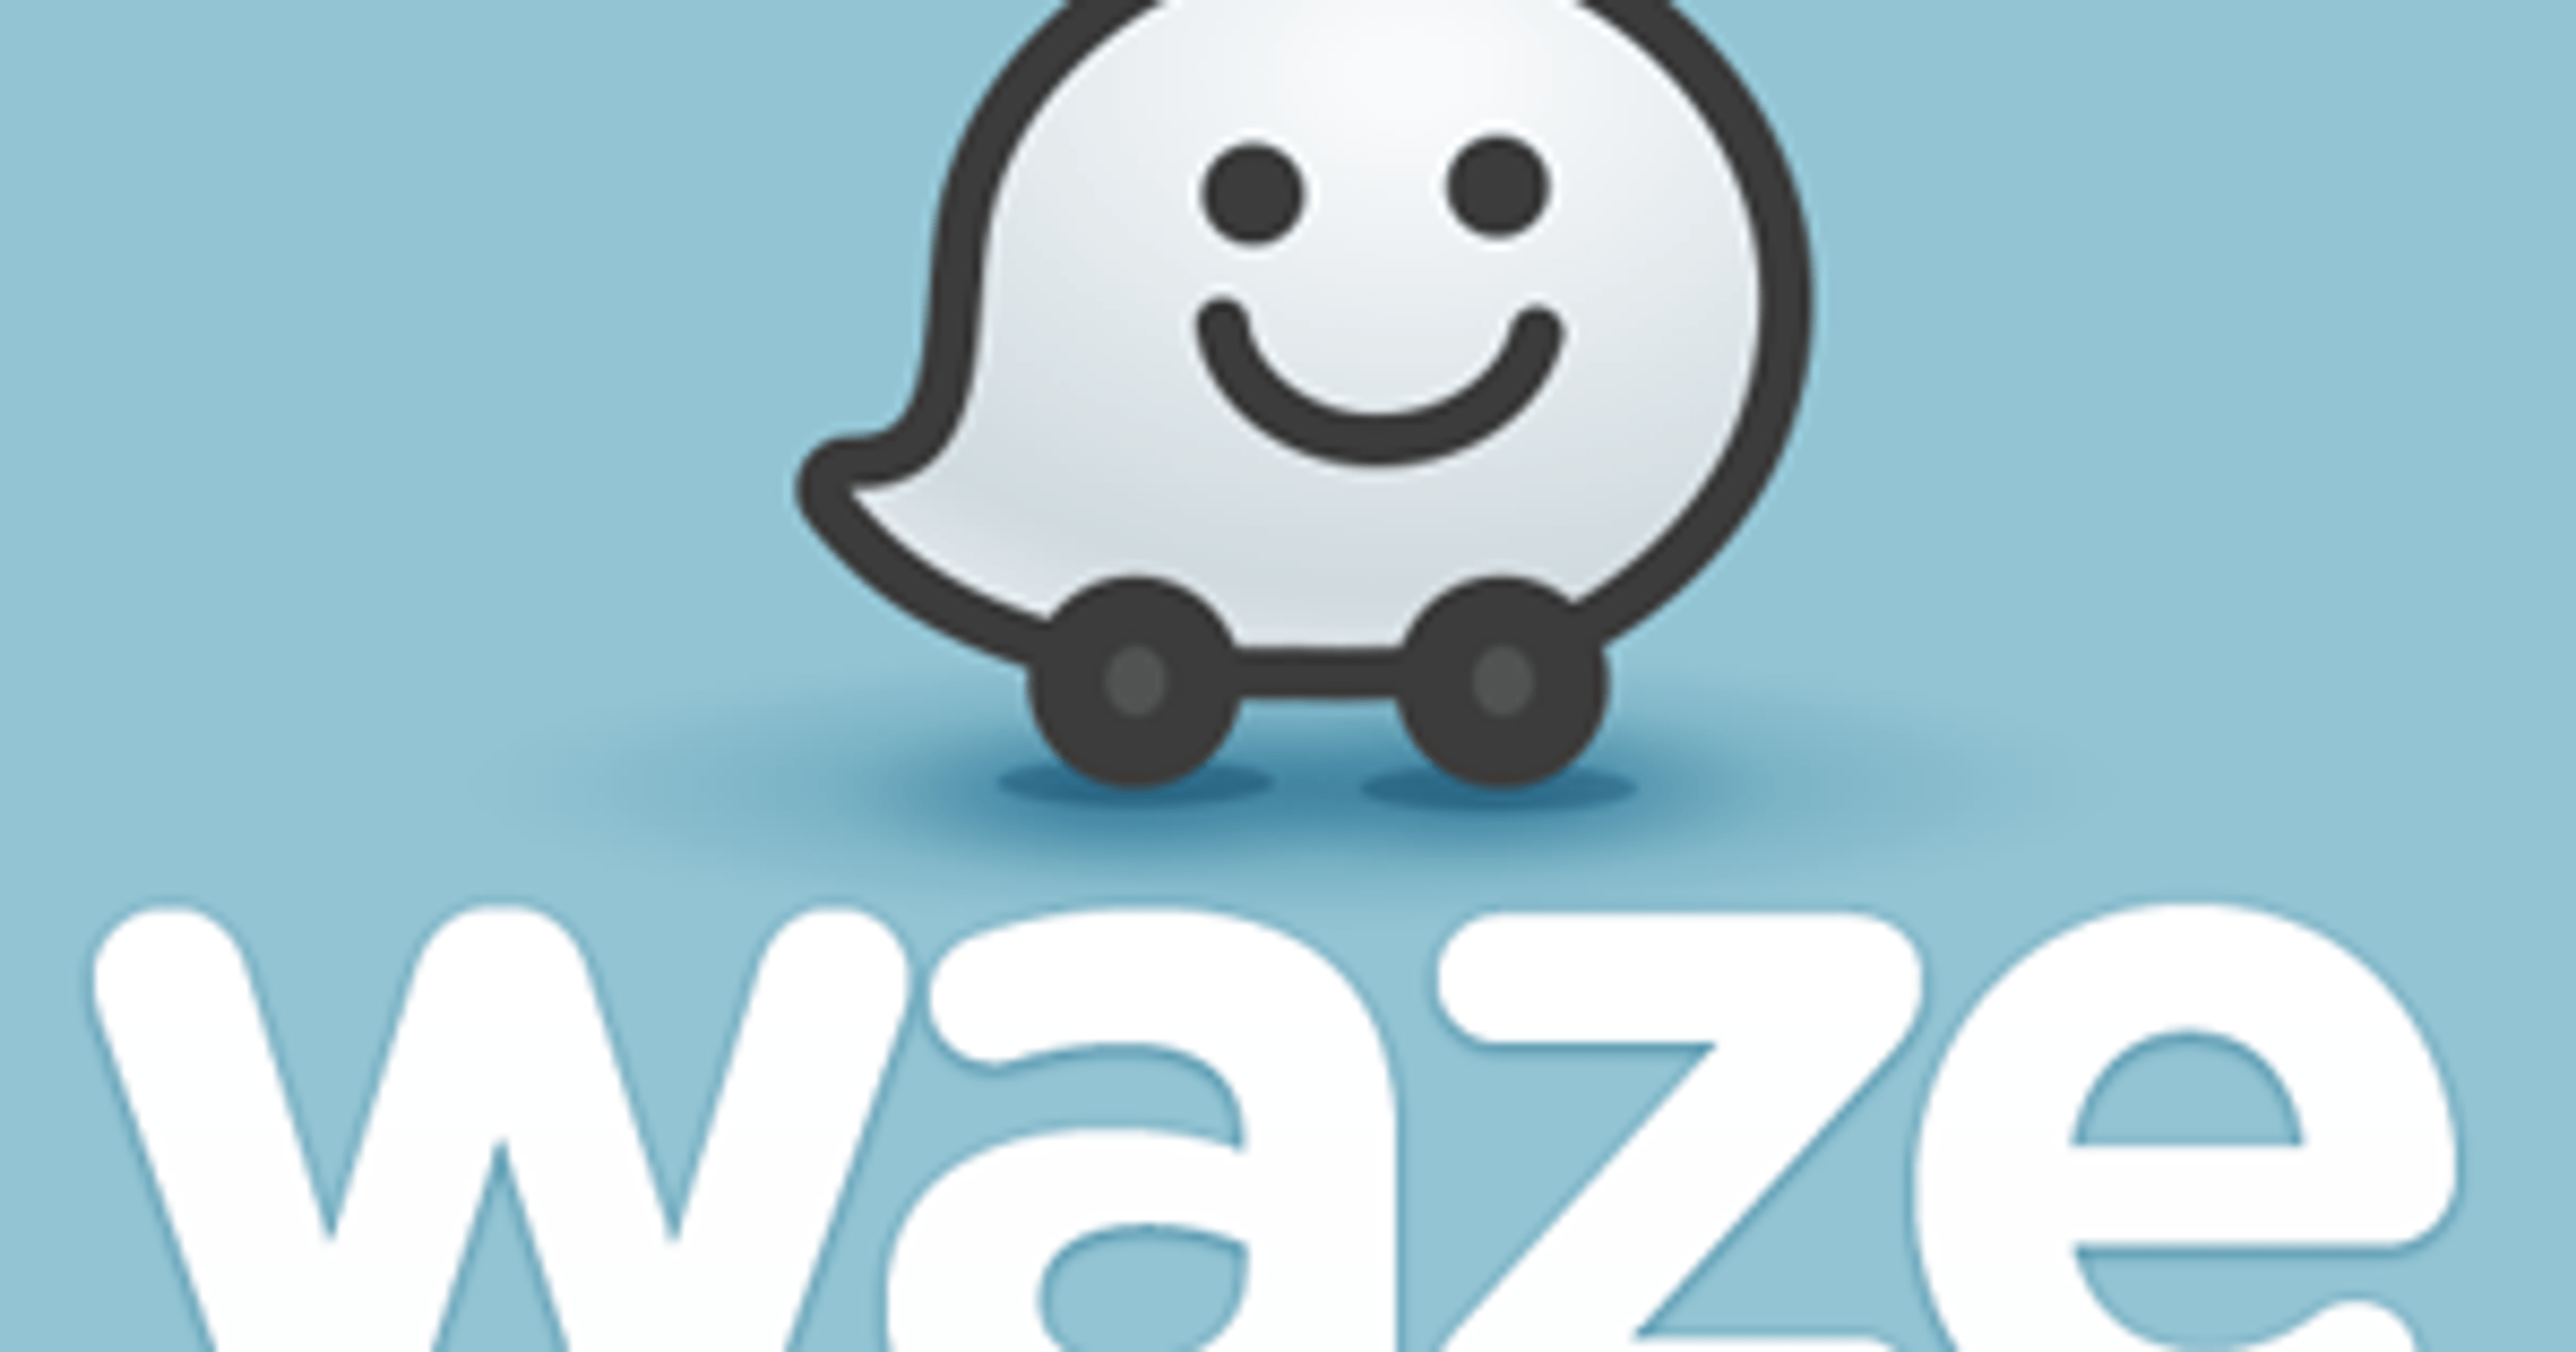 Waze Logo - Ohio Turnpike and Waze navigation app form partnership